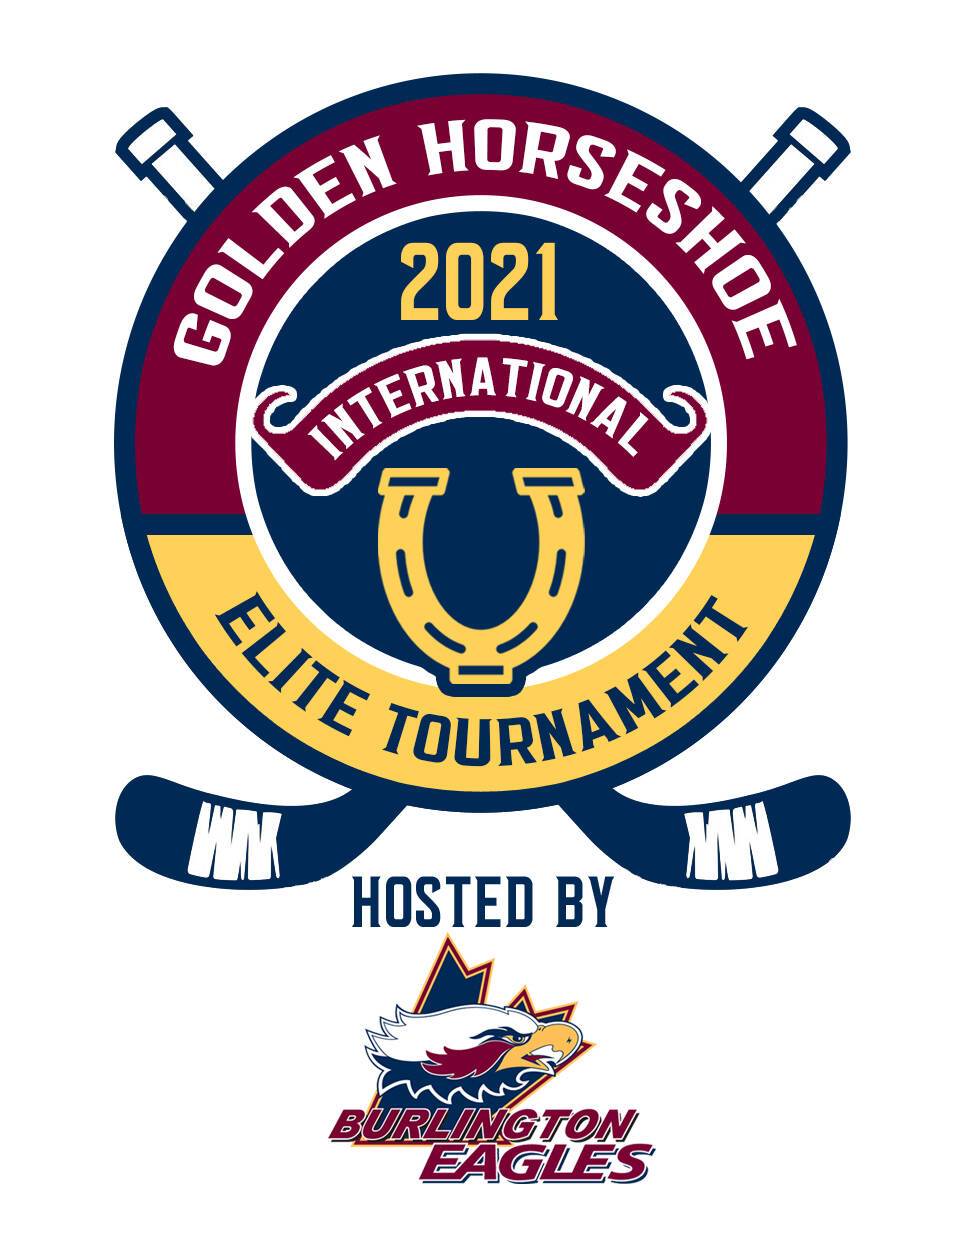 1 2021 Golden Horseshoe Tournament